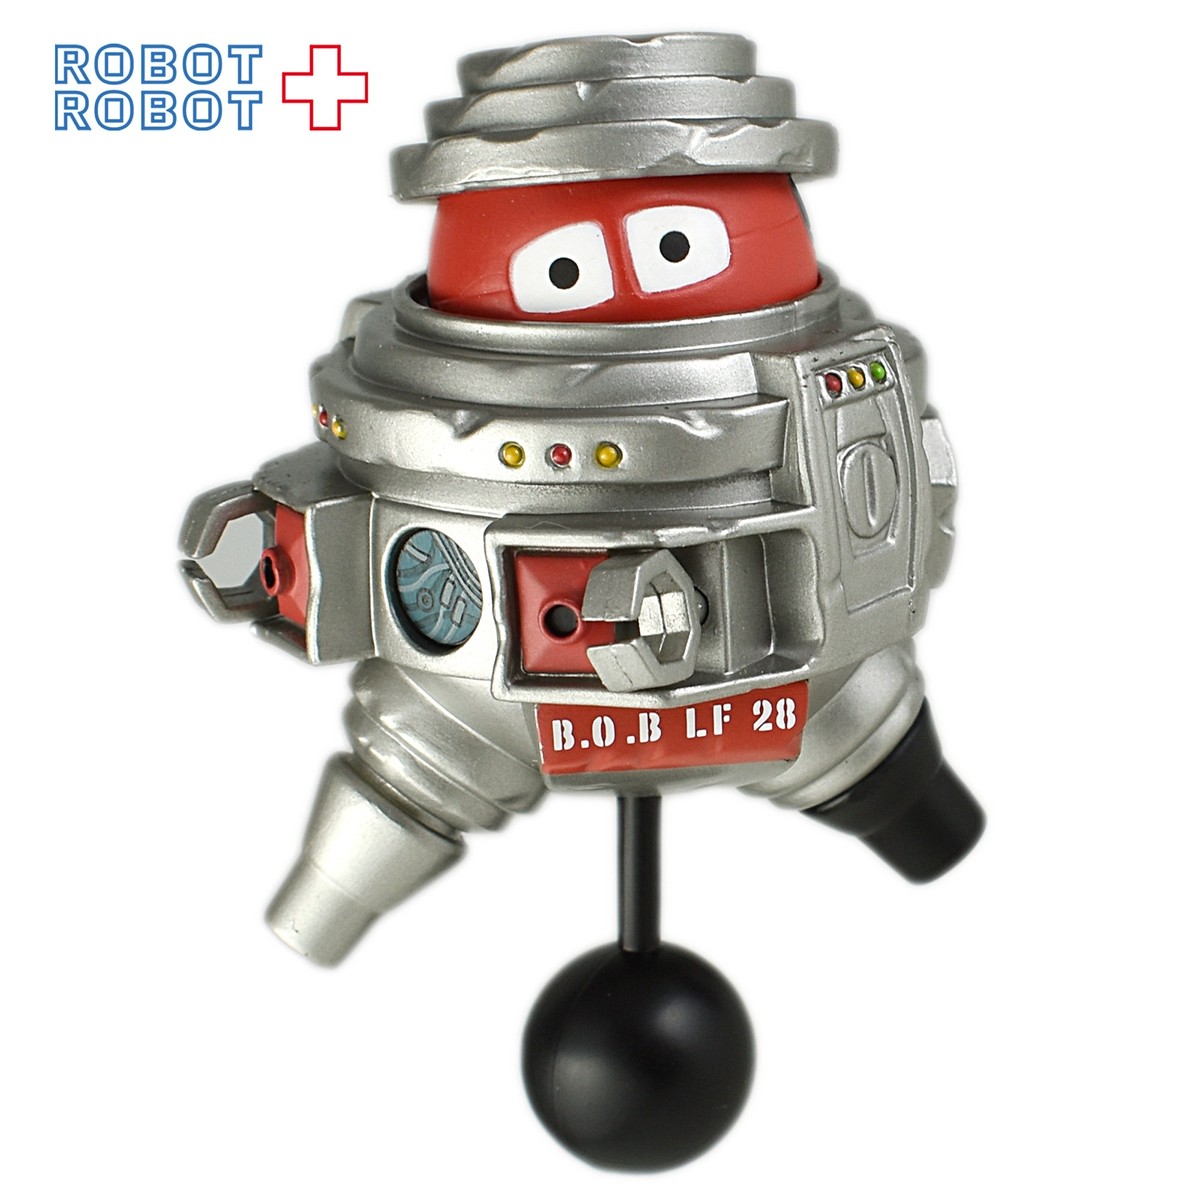 ディズニーキューブリック オールドボブ ブラックホール Robotrobot